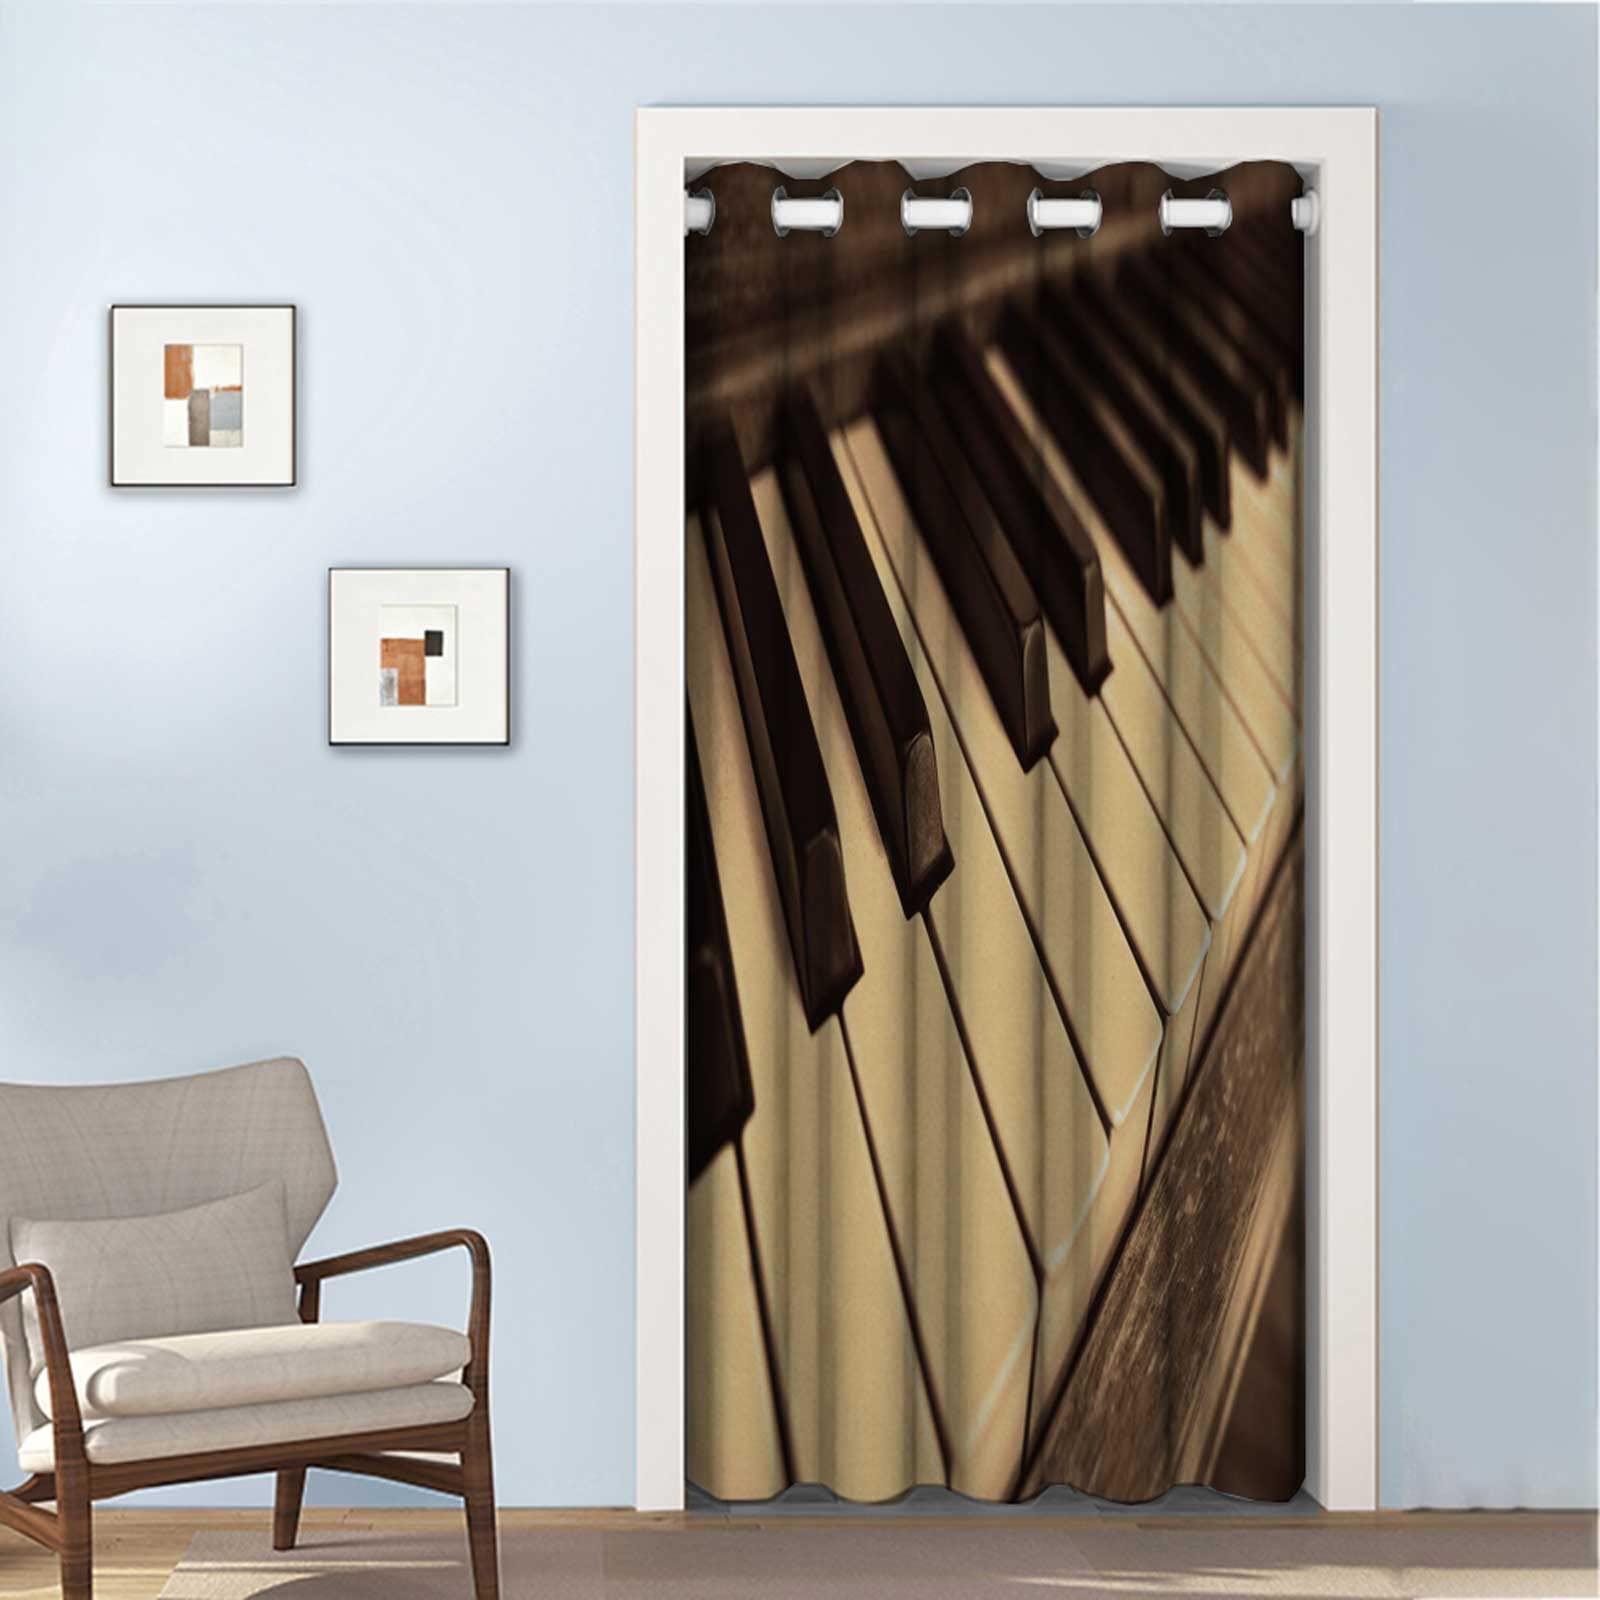 ピアノ 楽器 音楽 ピアノ キー キーボード 楽器 メロディー 間仕切りカーテン のれん 遮光 北欧 ロング 暖簾 アコーディオンカーテン 冷